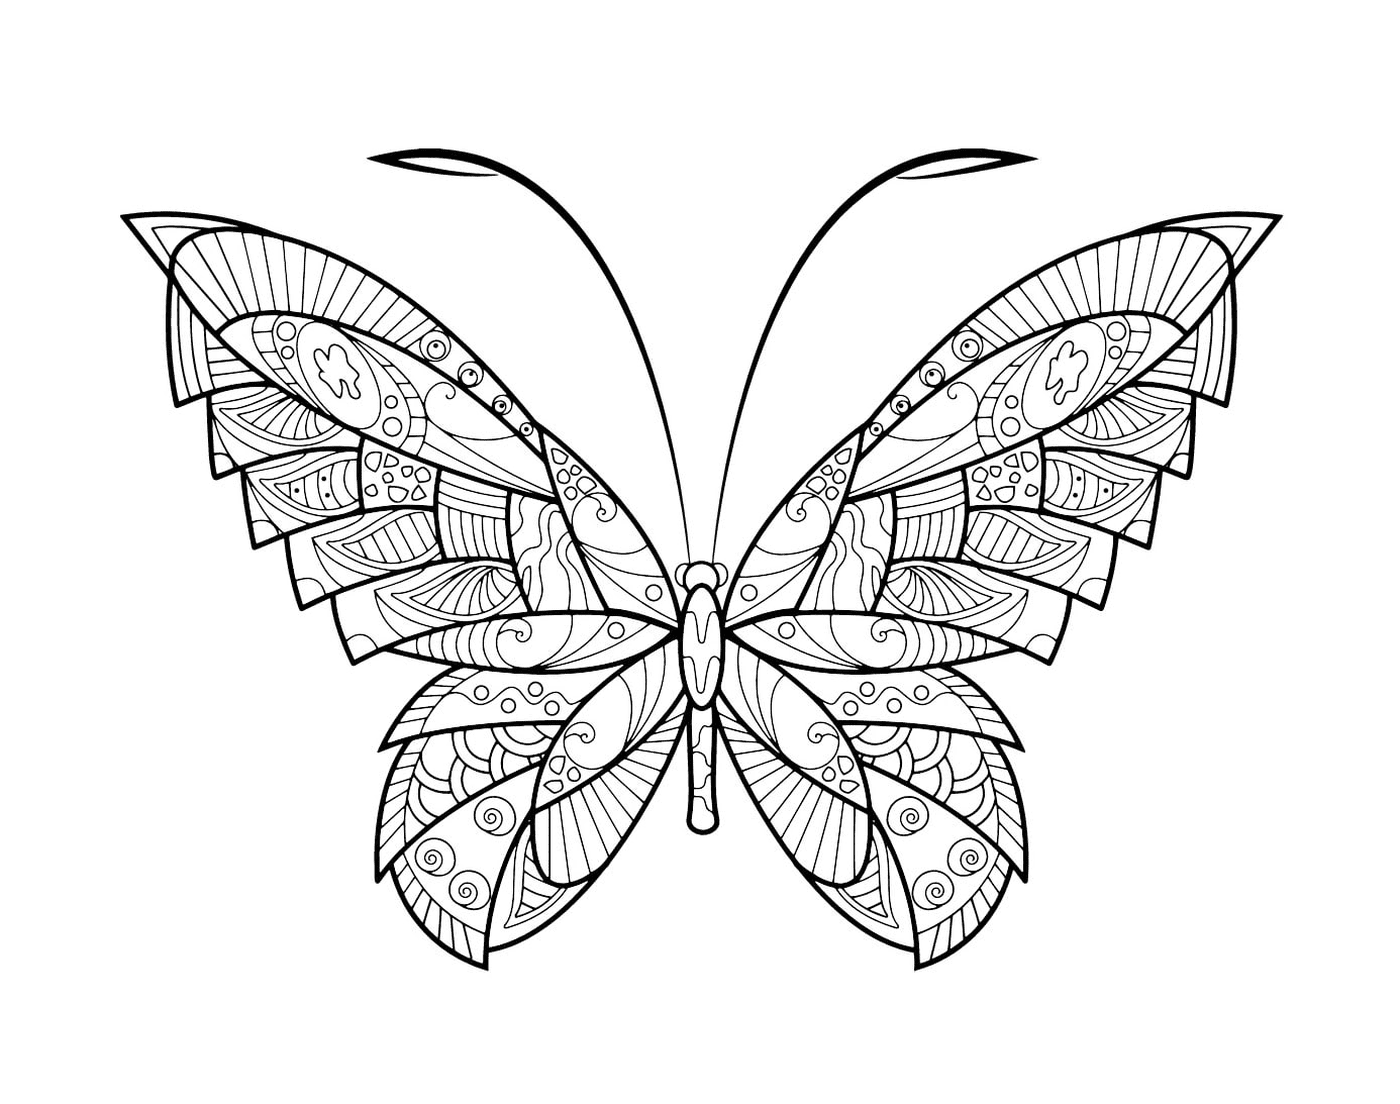  Farfalla Zentangle con modelli complessi 